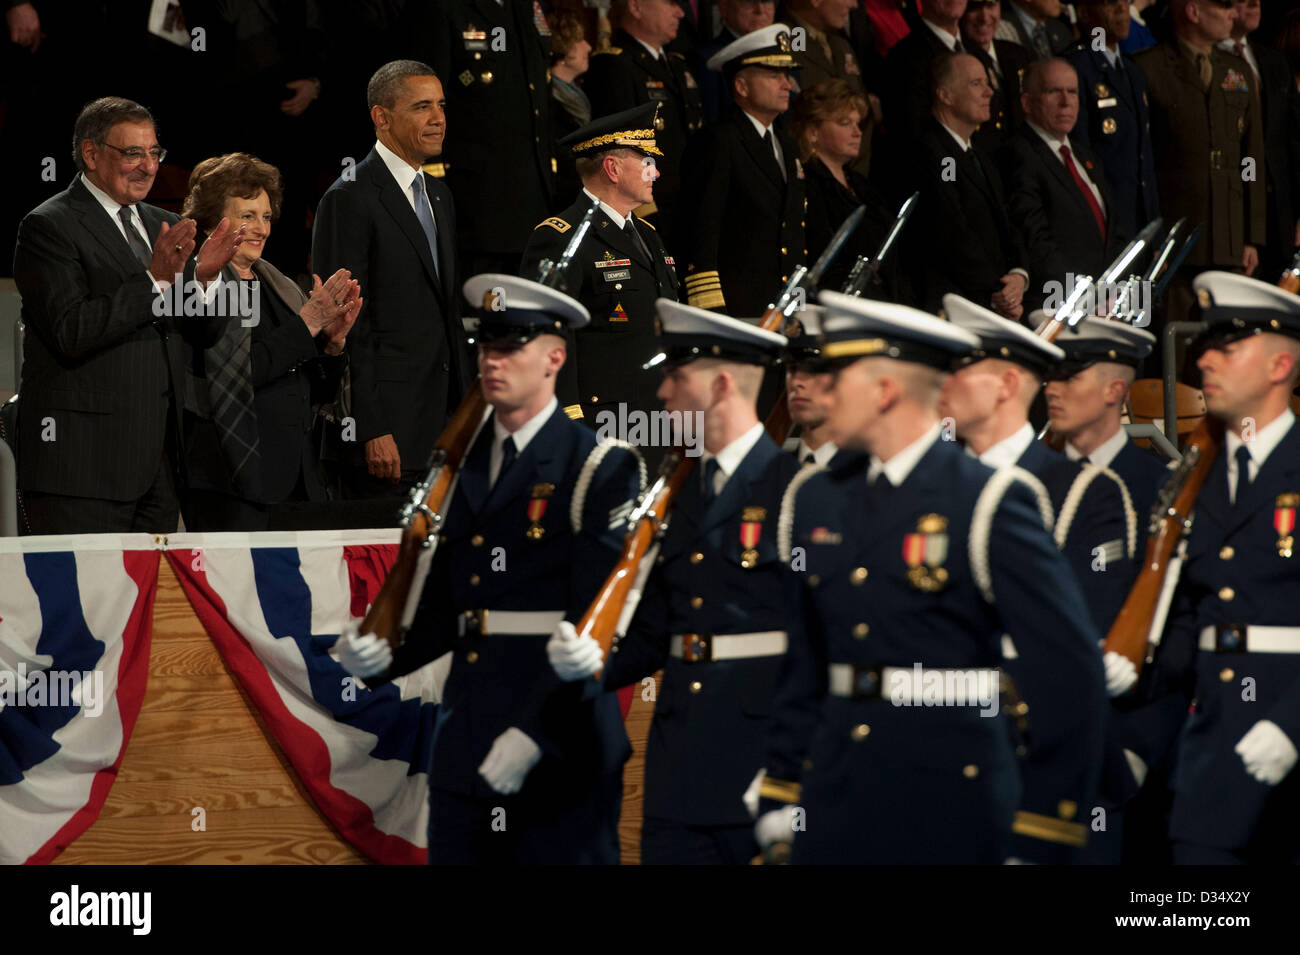 Arlington, Virginia, USA. Feb 8, 2013. Le président américain Barack Obama et le secrétaire à la Défense Leon Panetta en faveur d'un passage dans l'étude au cours de l'armée hommage d'adieu en son honneur le 8 février 2013 à Arlington, VA. Panetta quitte son poste de secrétaire de la défense de la 23e Banque D'Images